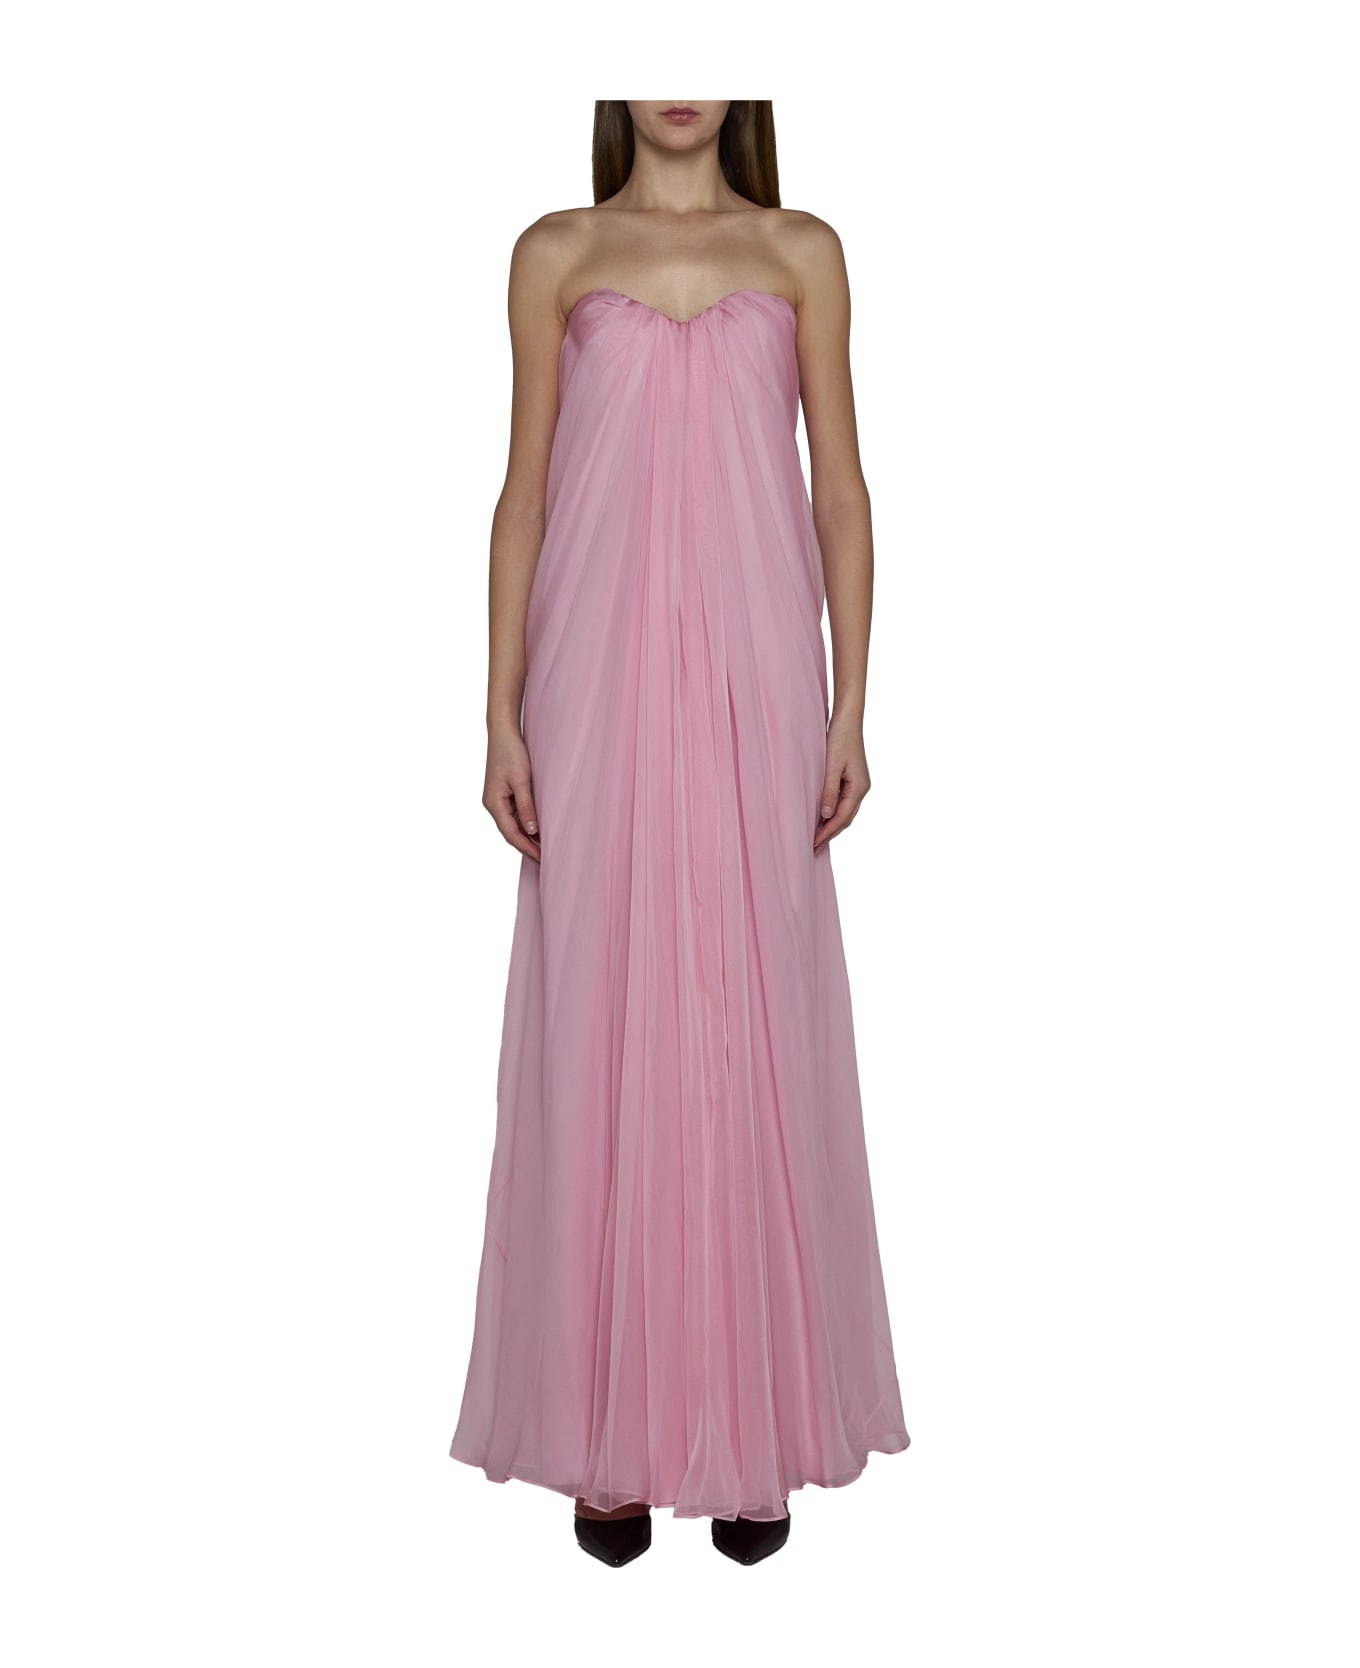 Alexander McQueen Dress - Pale pink